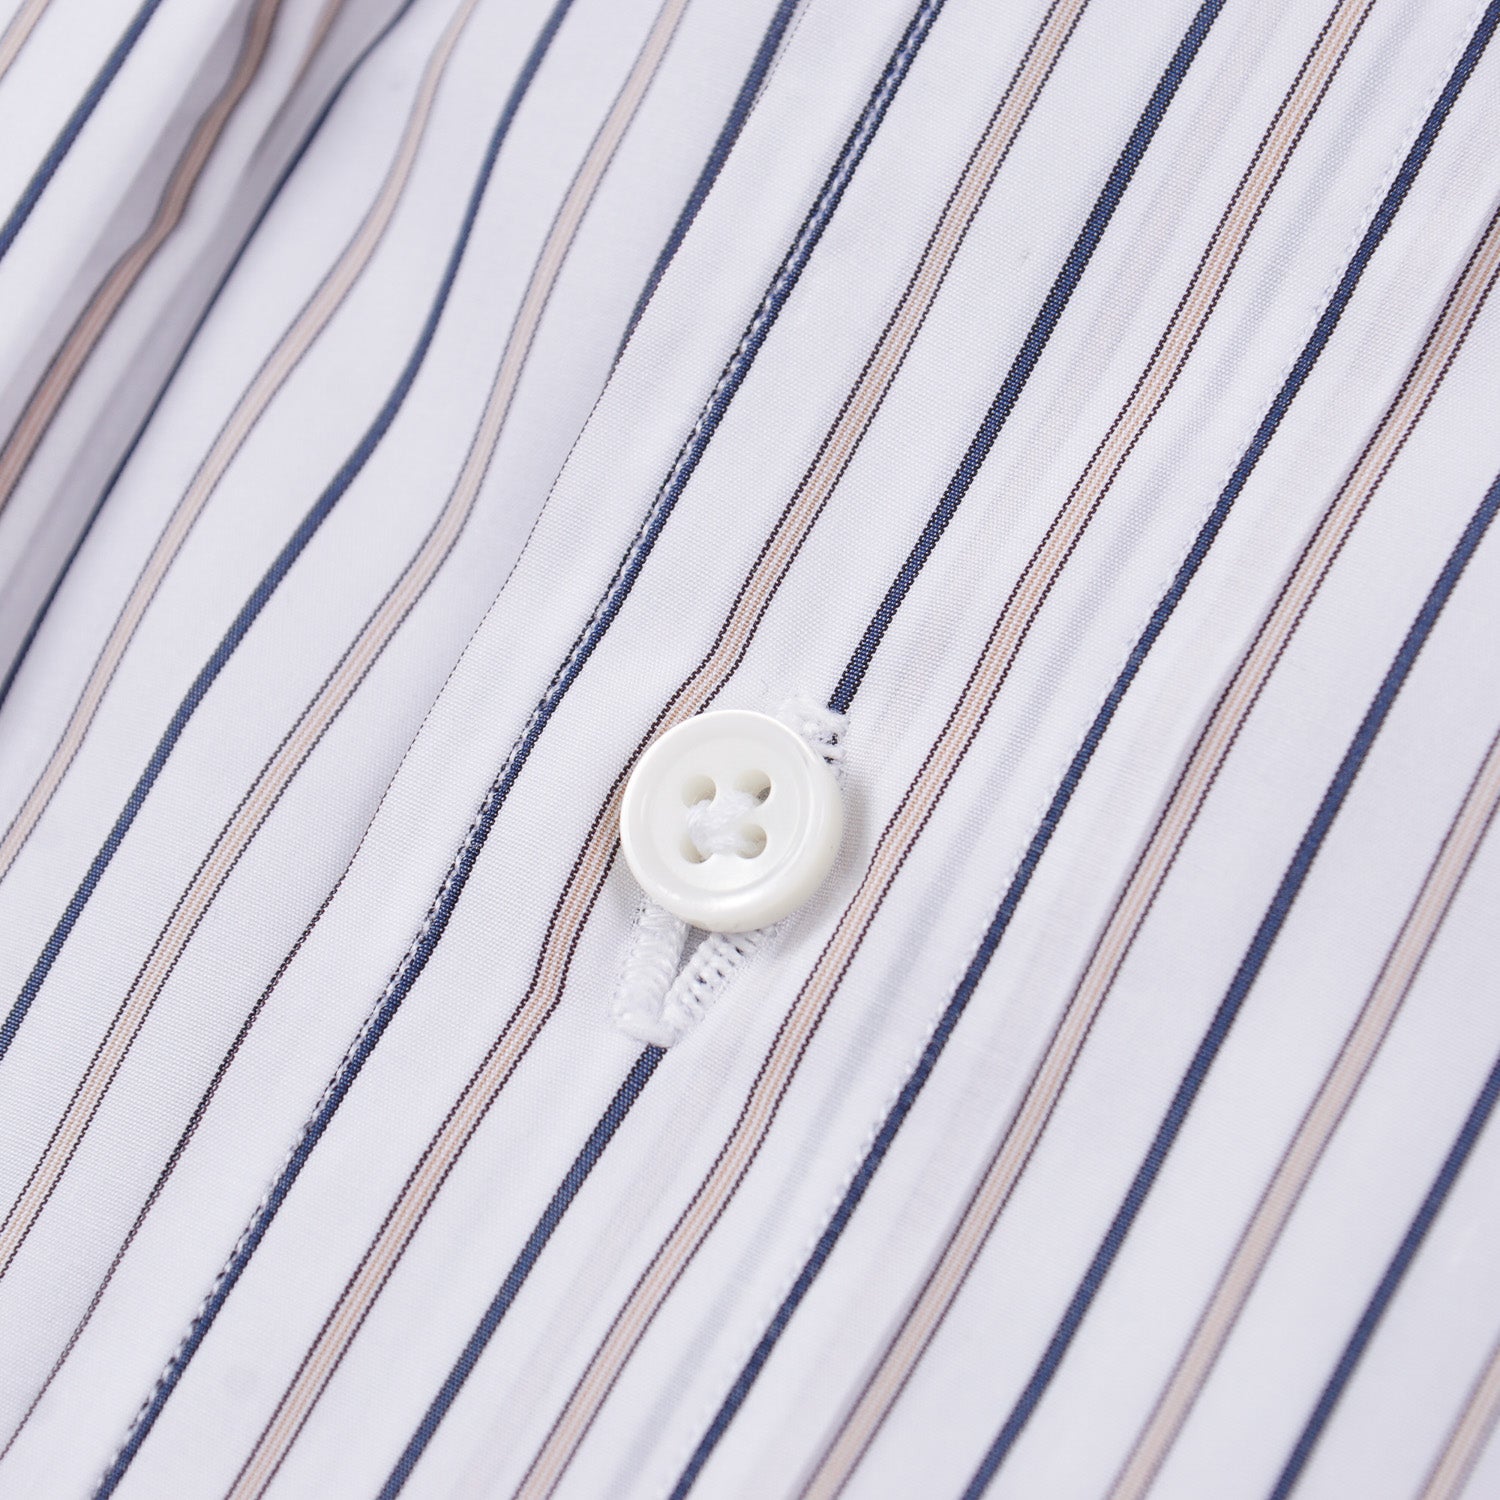 Luigi Borrelli Royal Collection Cotton Shirt - Top Shelf Apparel